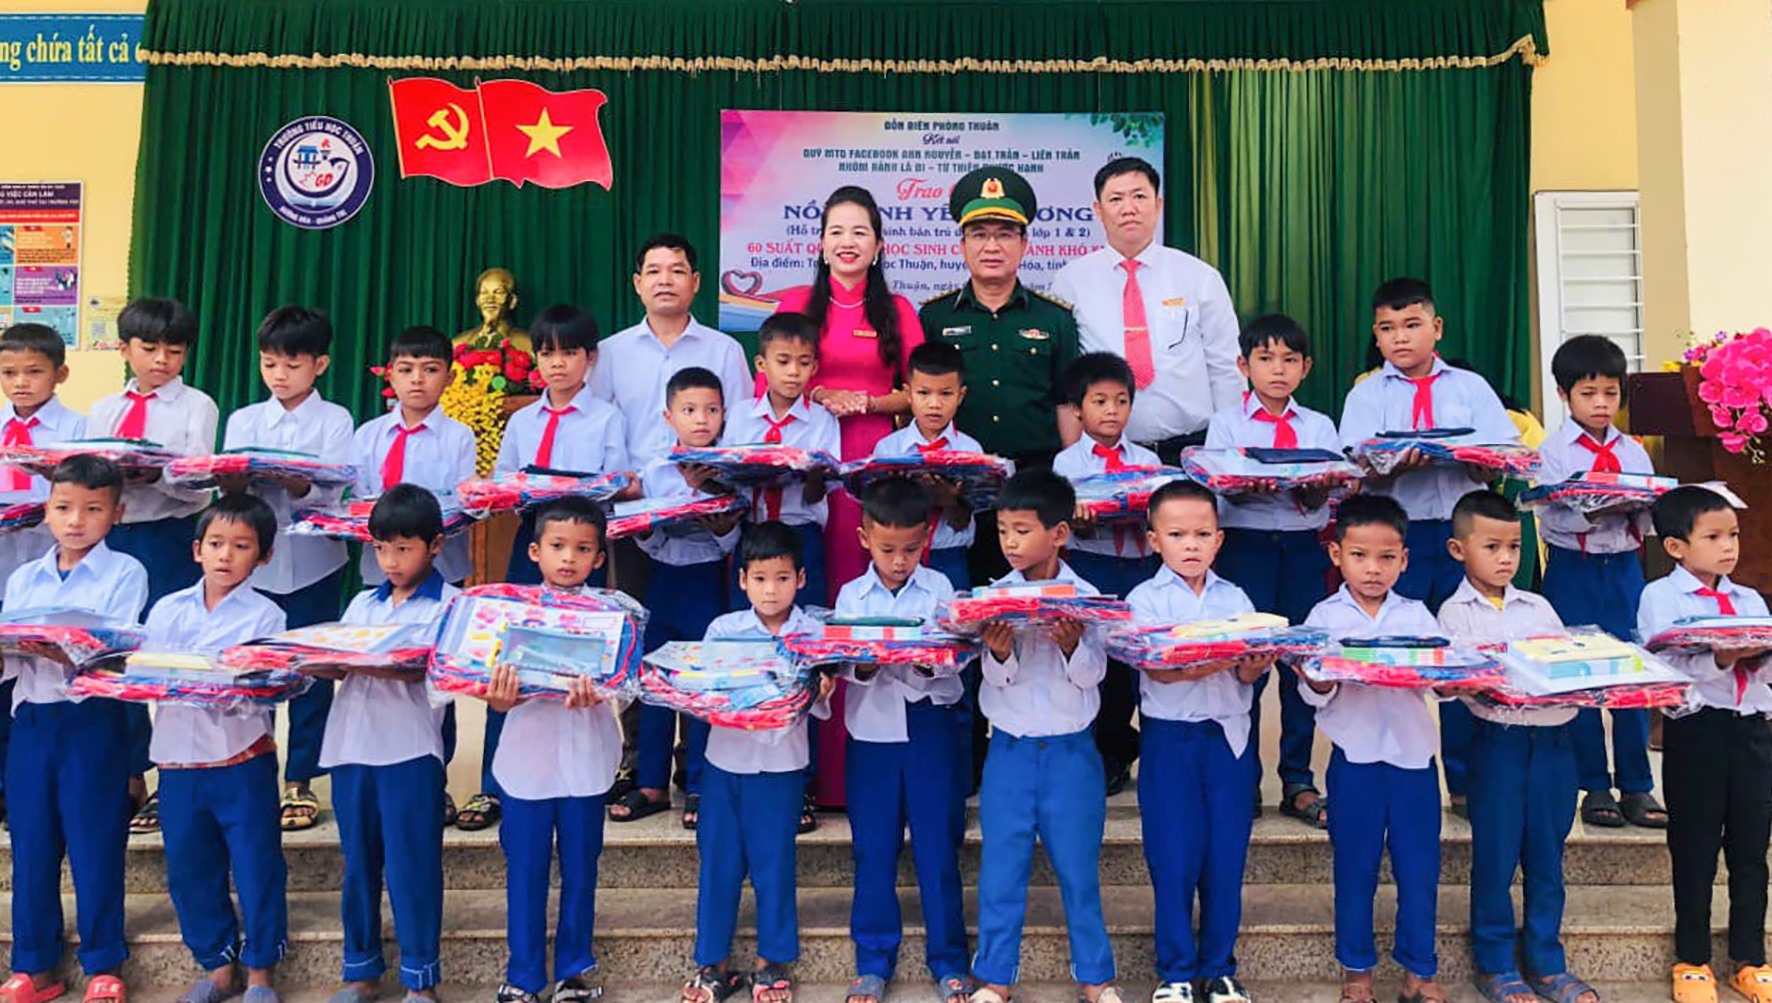 Cô Nguyễn Thị Thuận cùng đại diện Đồn Biên phòng Thuận và các tổ chức, cá nhân hảo tâm trao quà cho học sinh -Ảnh: TRẦN TUYỀN